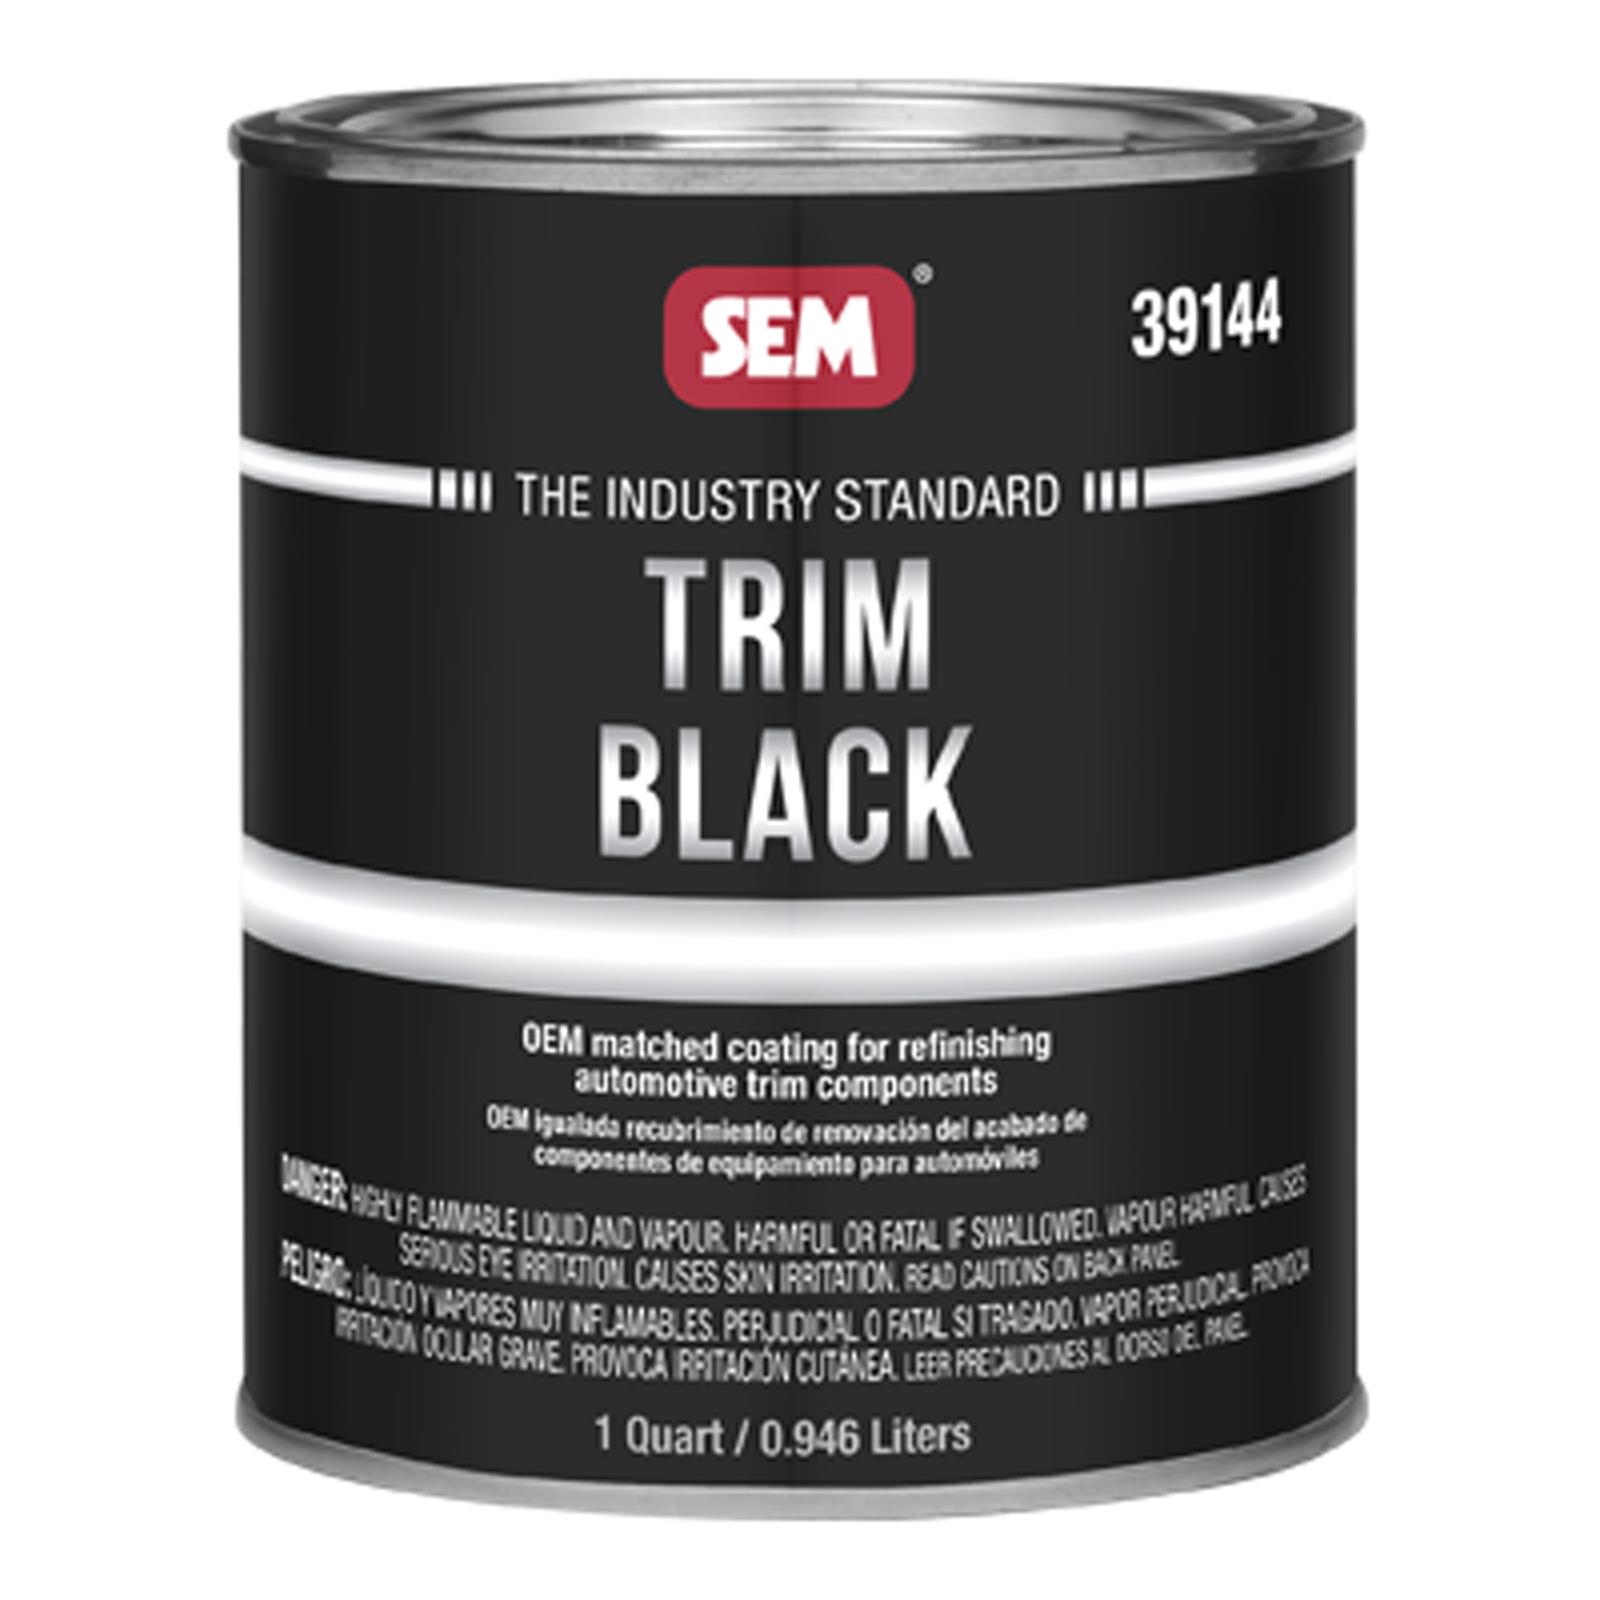 SEM Trim Black Review